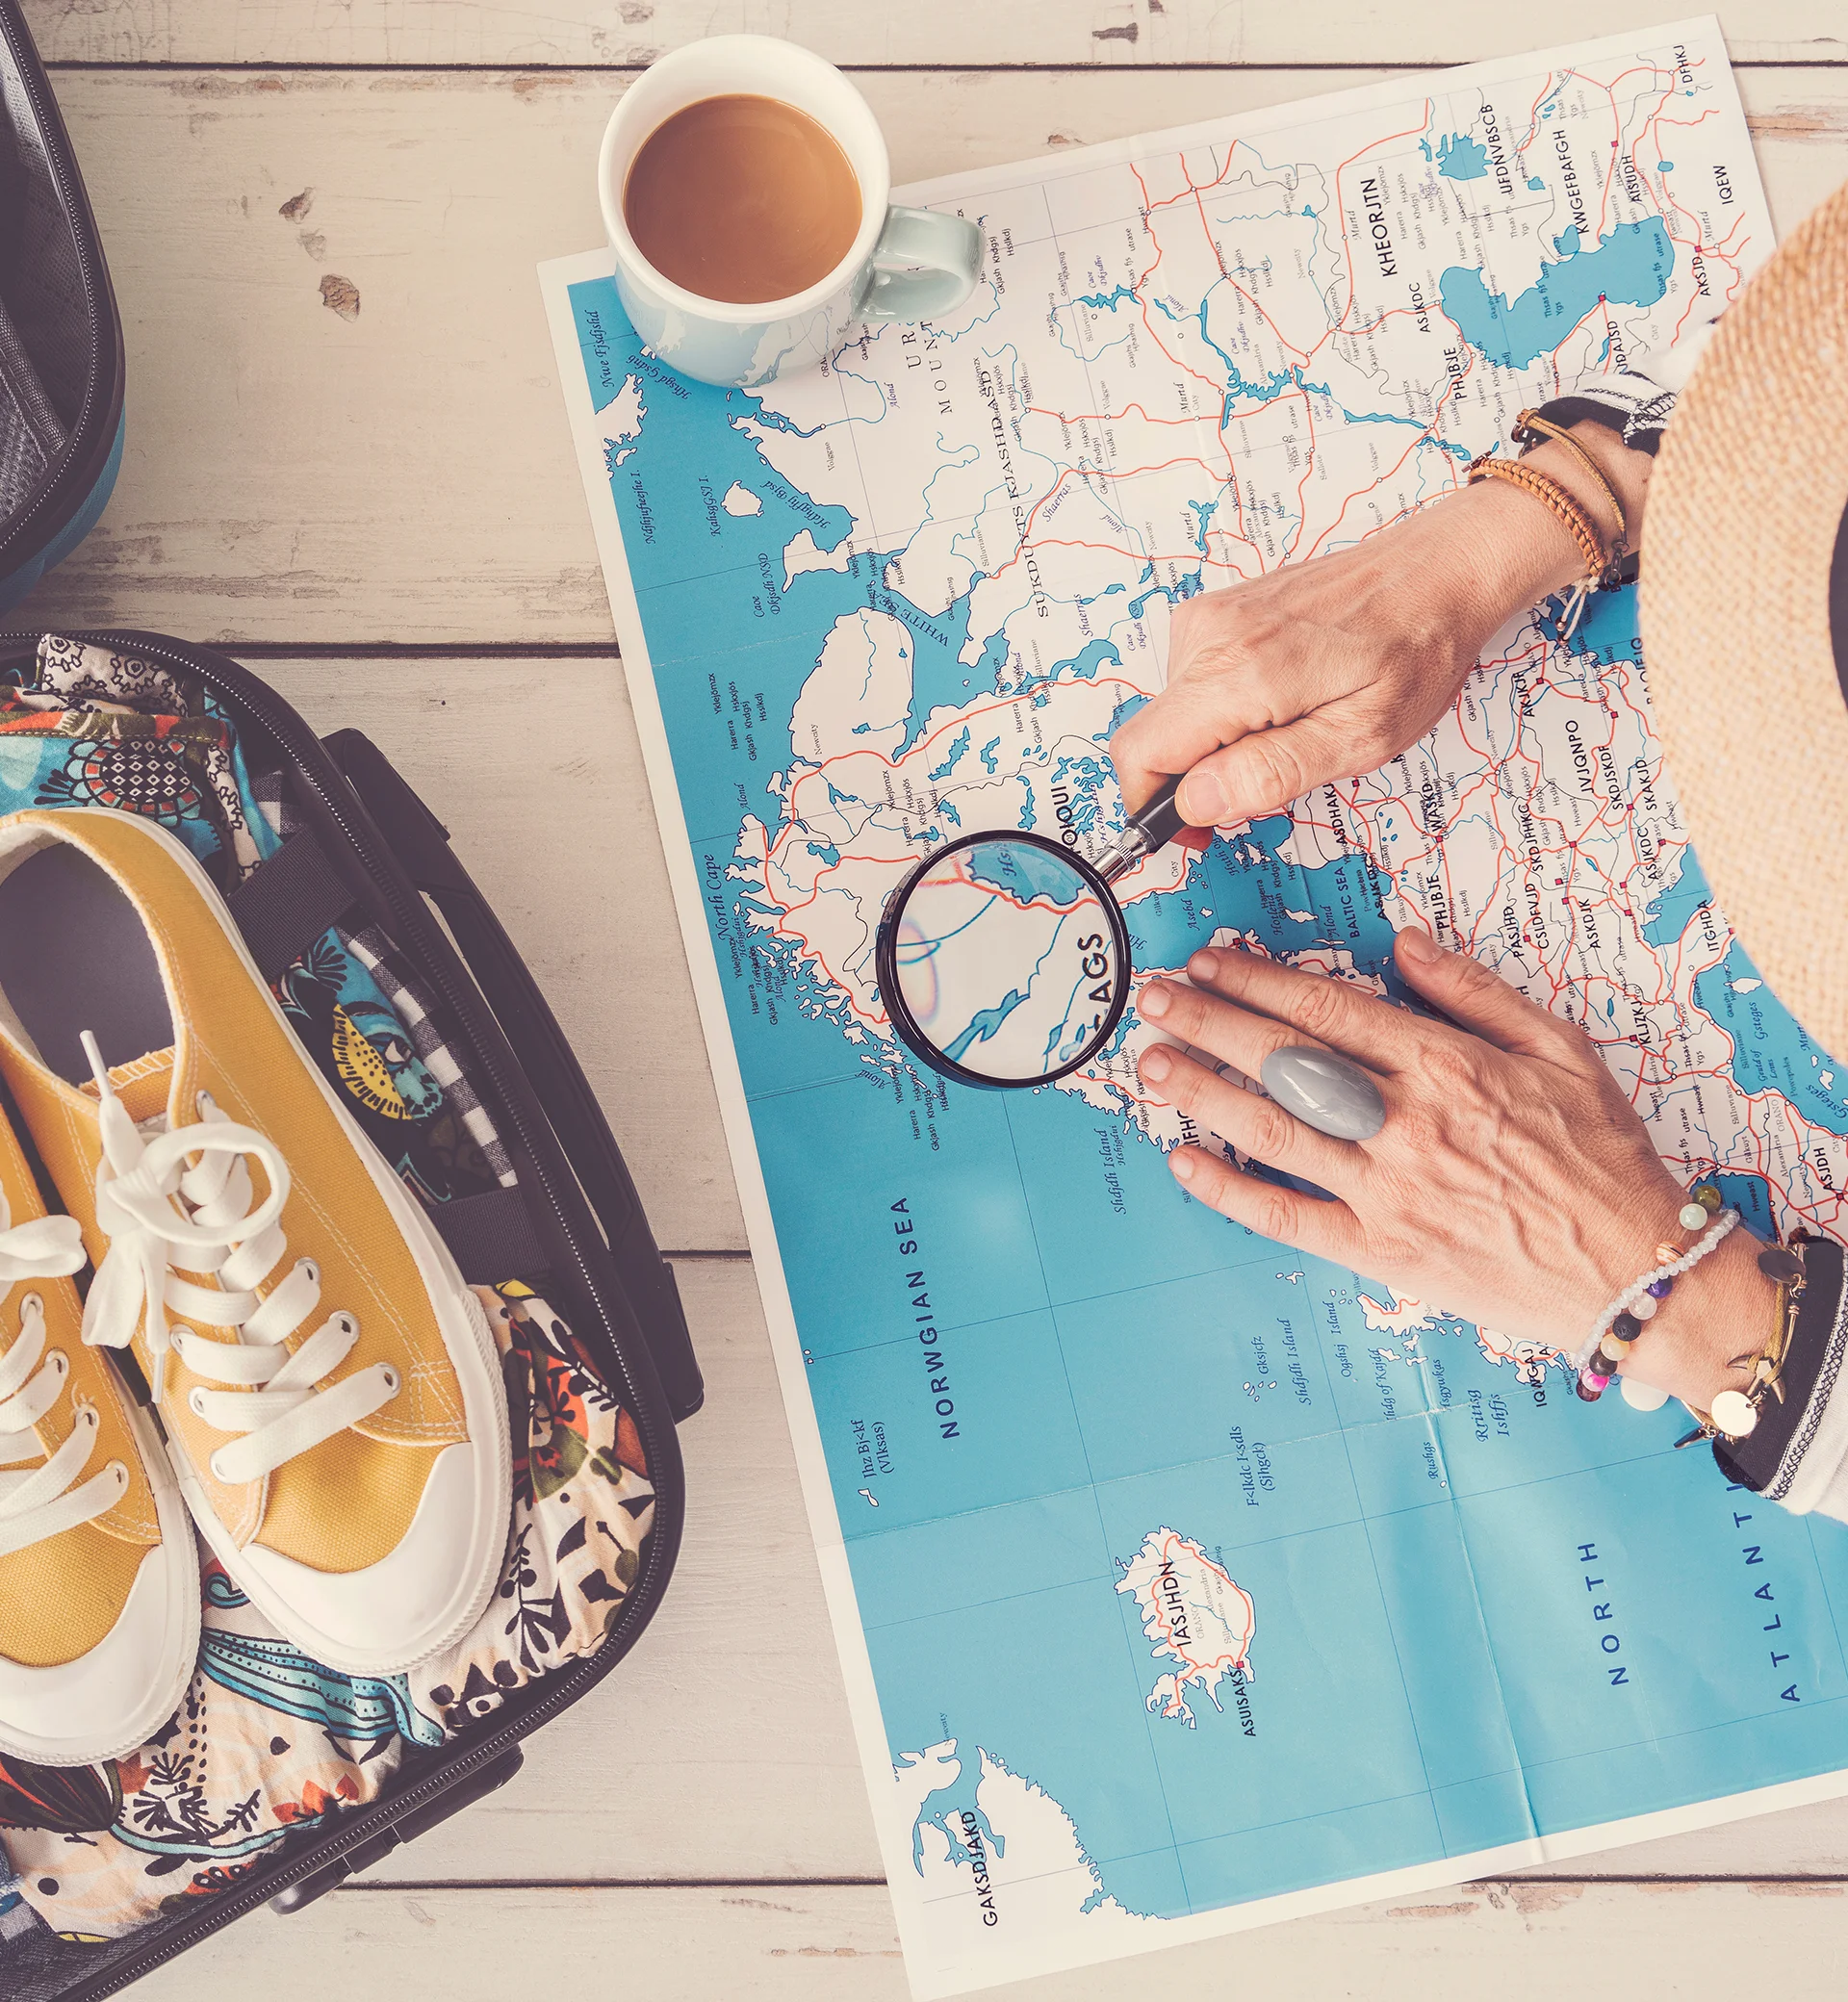 Imatge d'una persona mirant un mapa amb lupa amb les maletes de viatge a mig preparar.